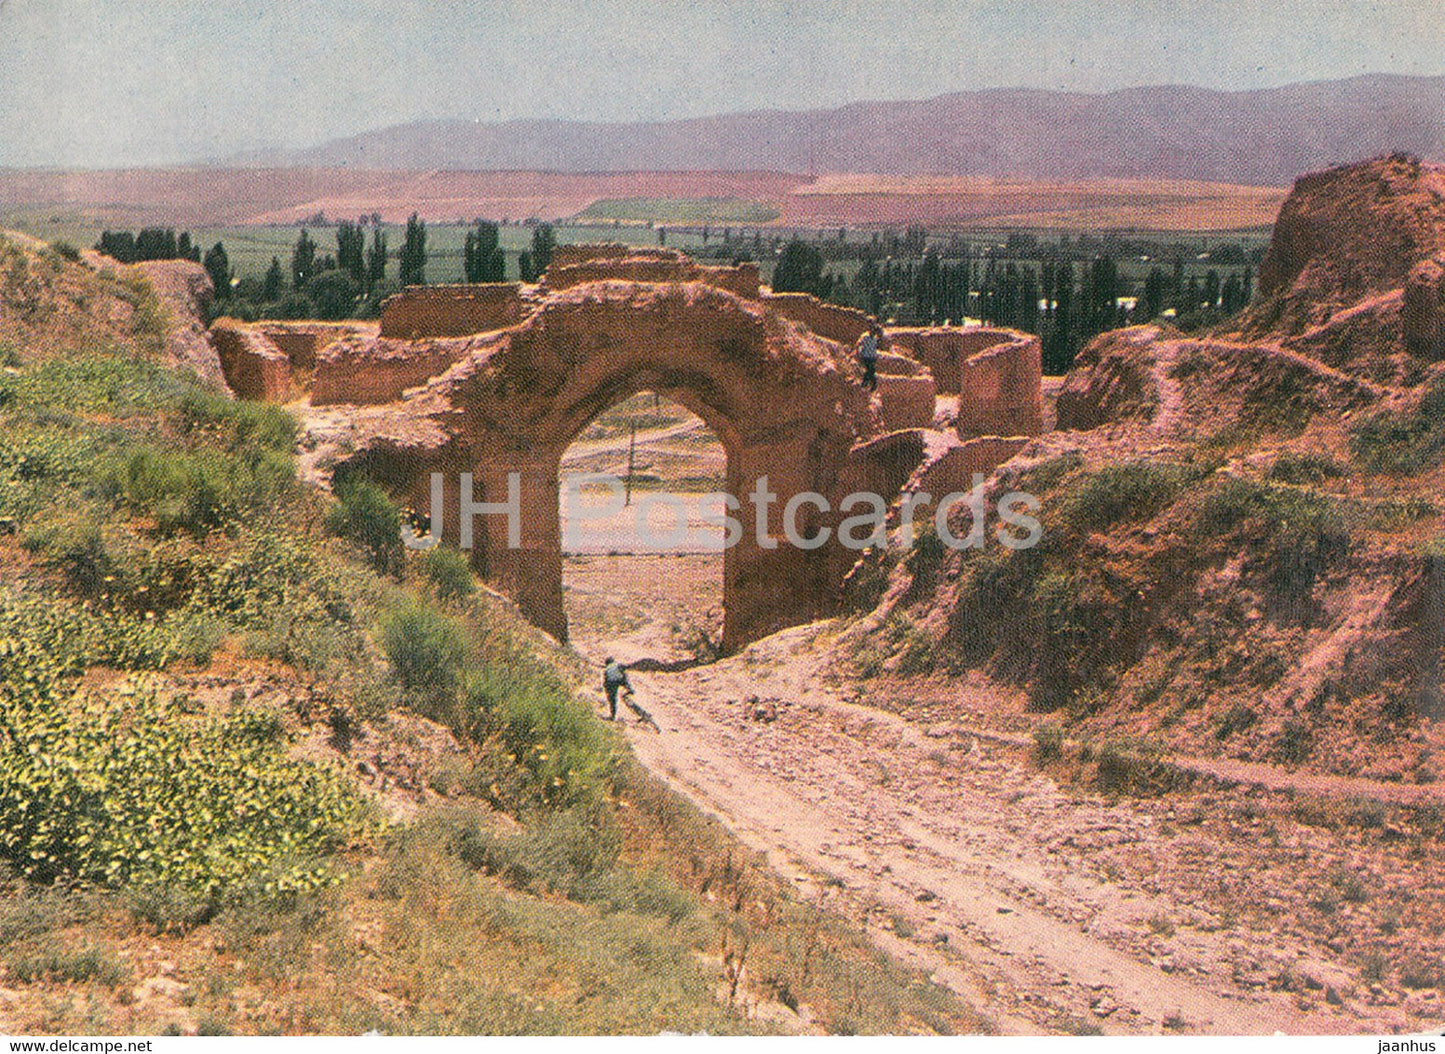 Hissar Fortress Gate - postal stationery - 1973 - Tajikistan USSR - unused - JH Postcards